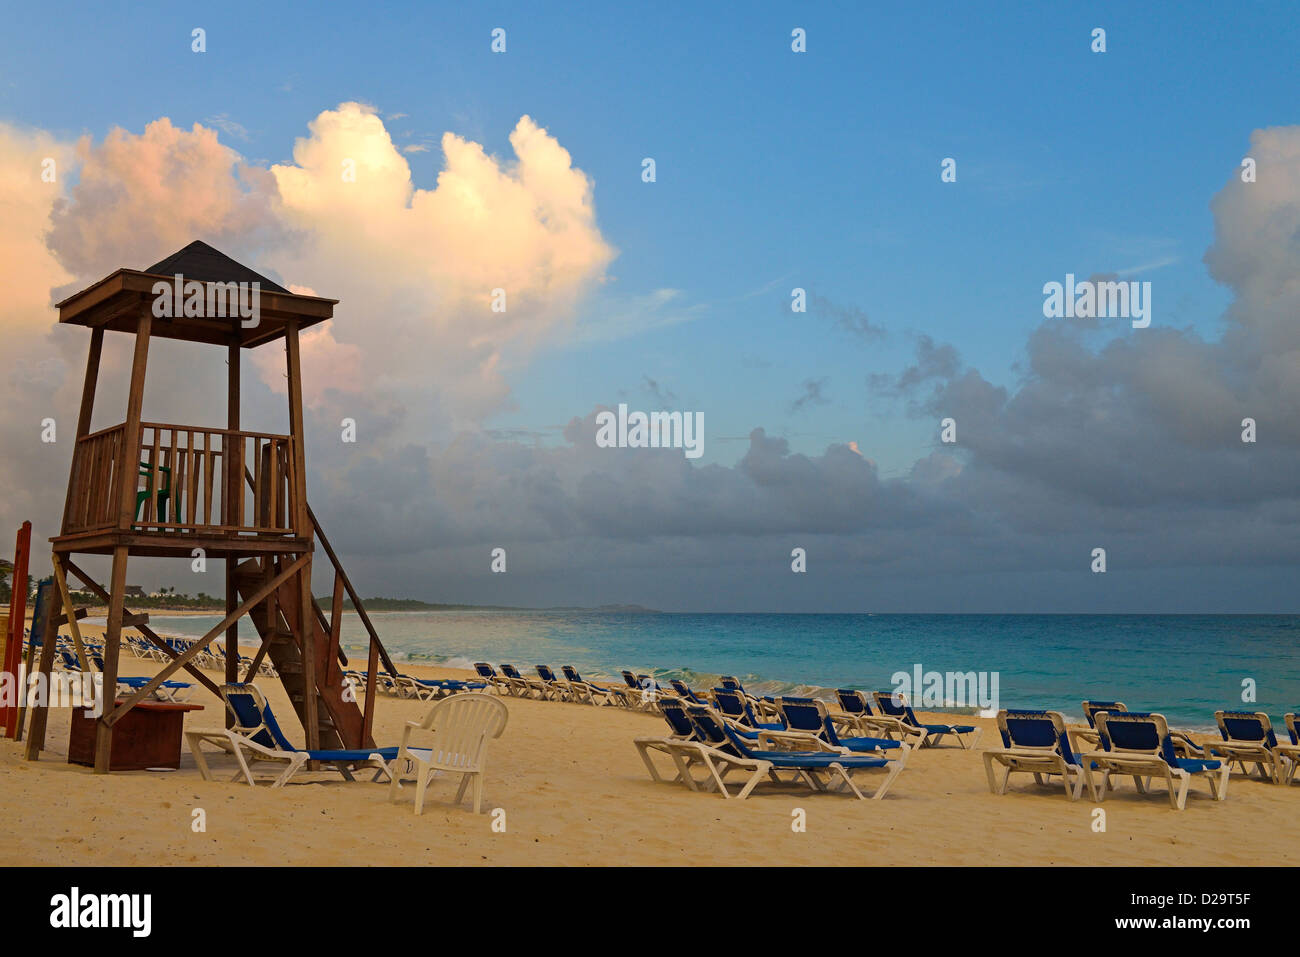 Beautiful Caribbean beach at sunrise, Punta Cana, Dominican Republic Stock Photo